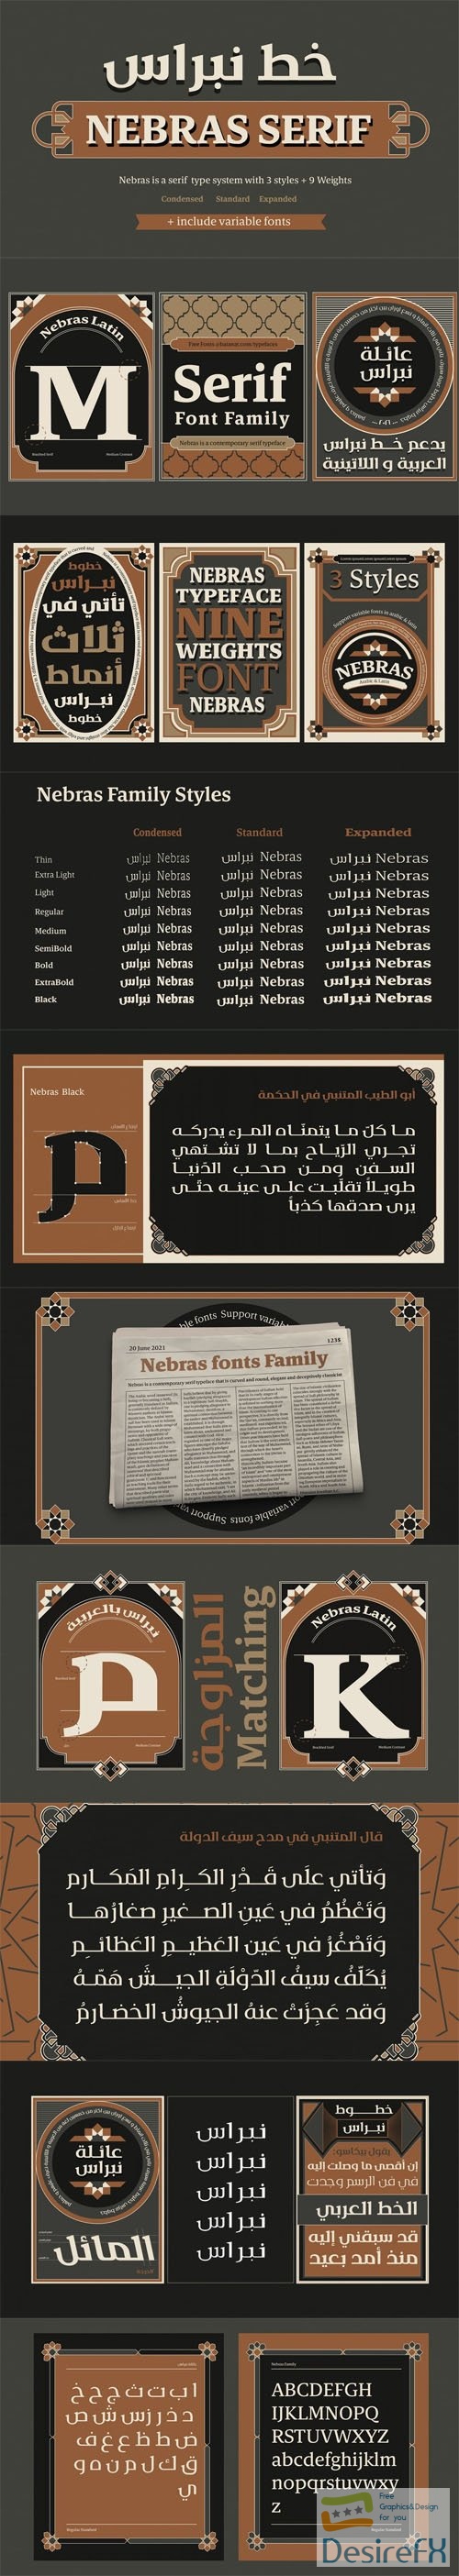 Nebras Serif Font Family